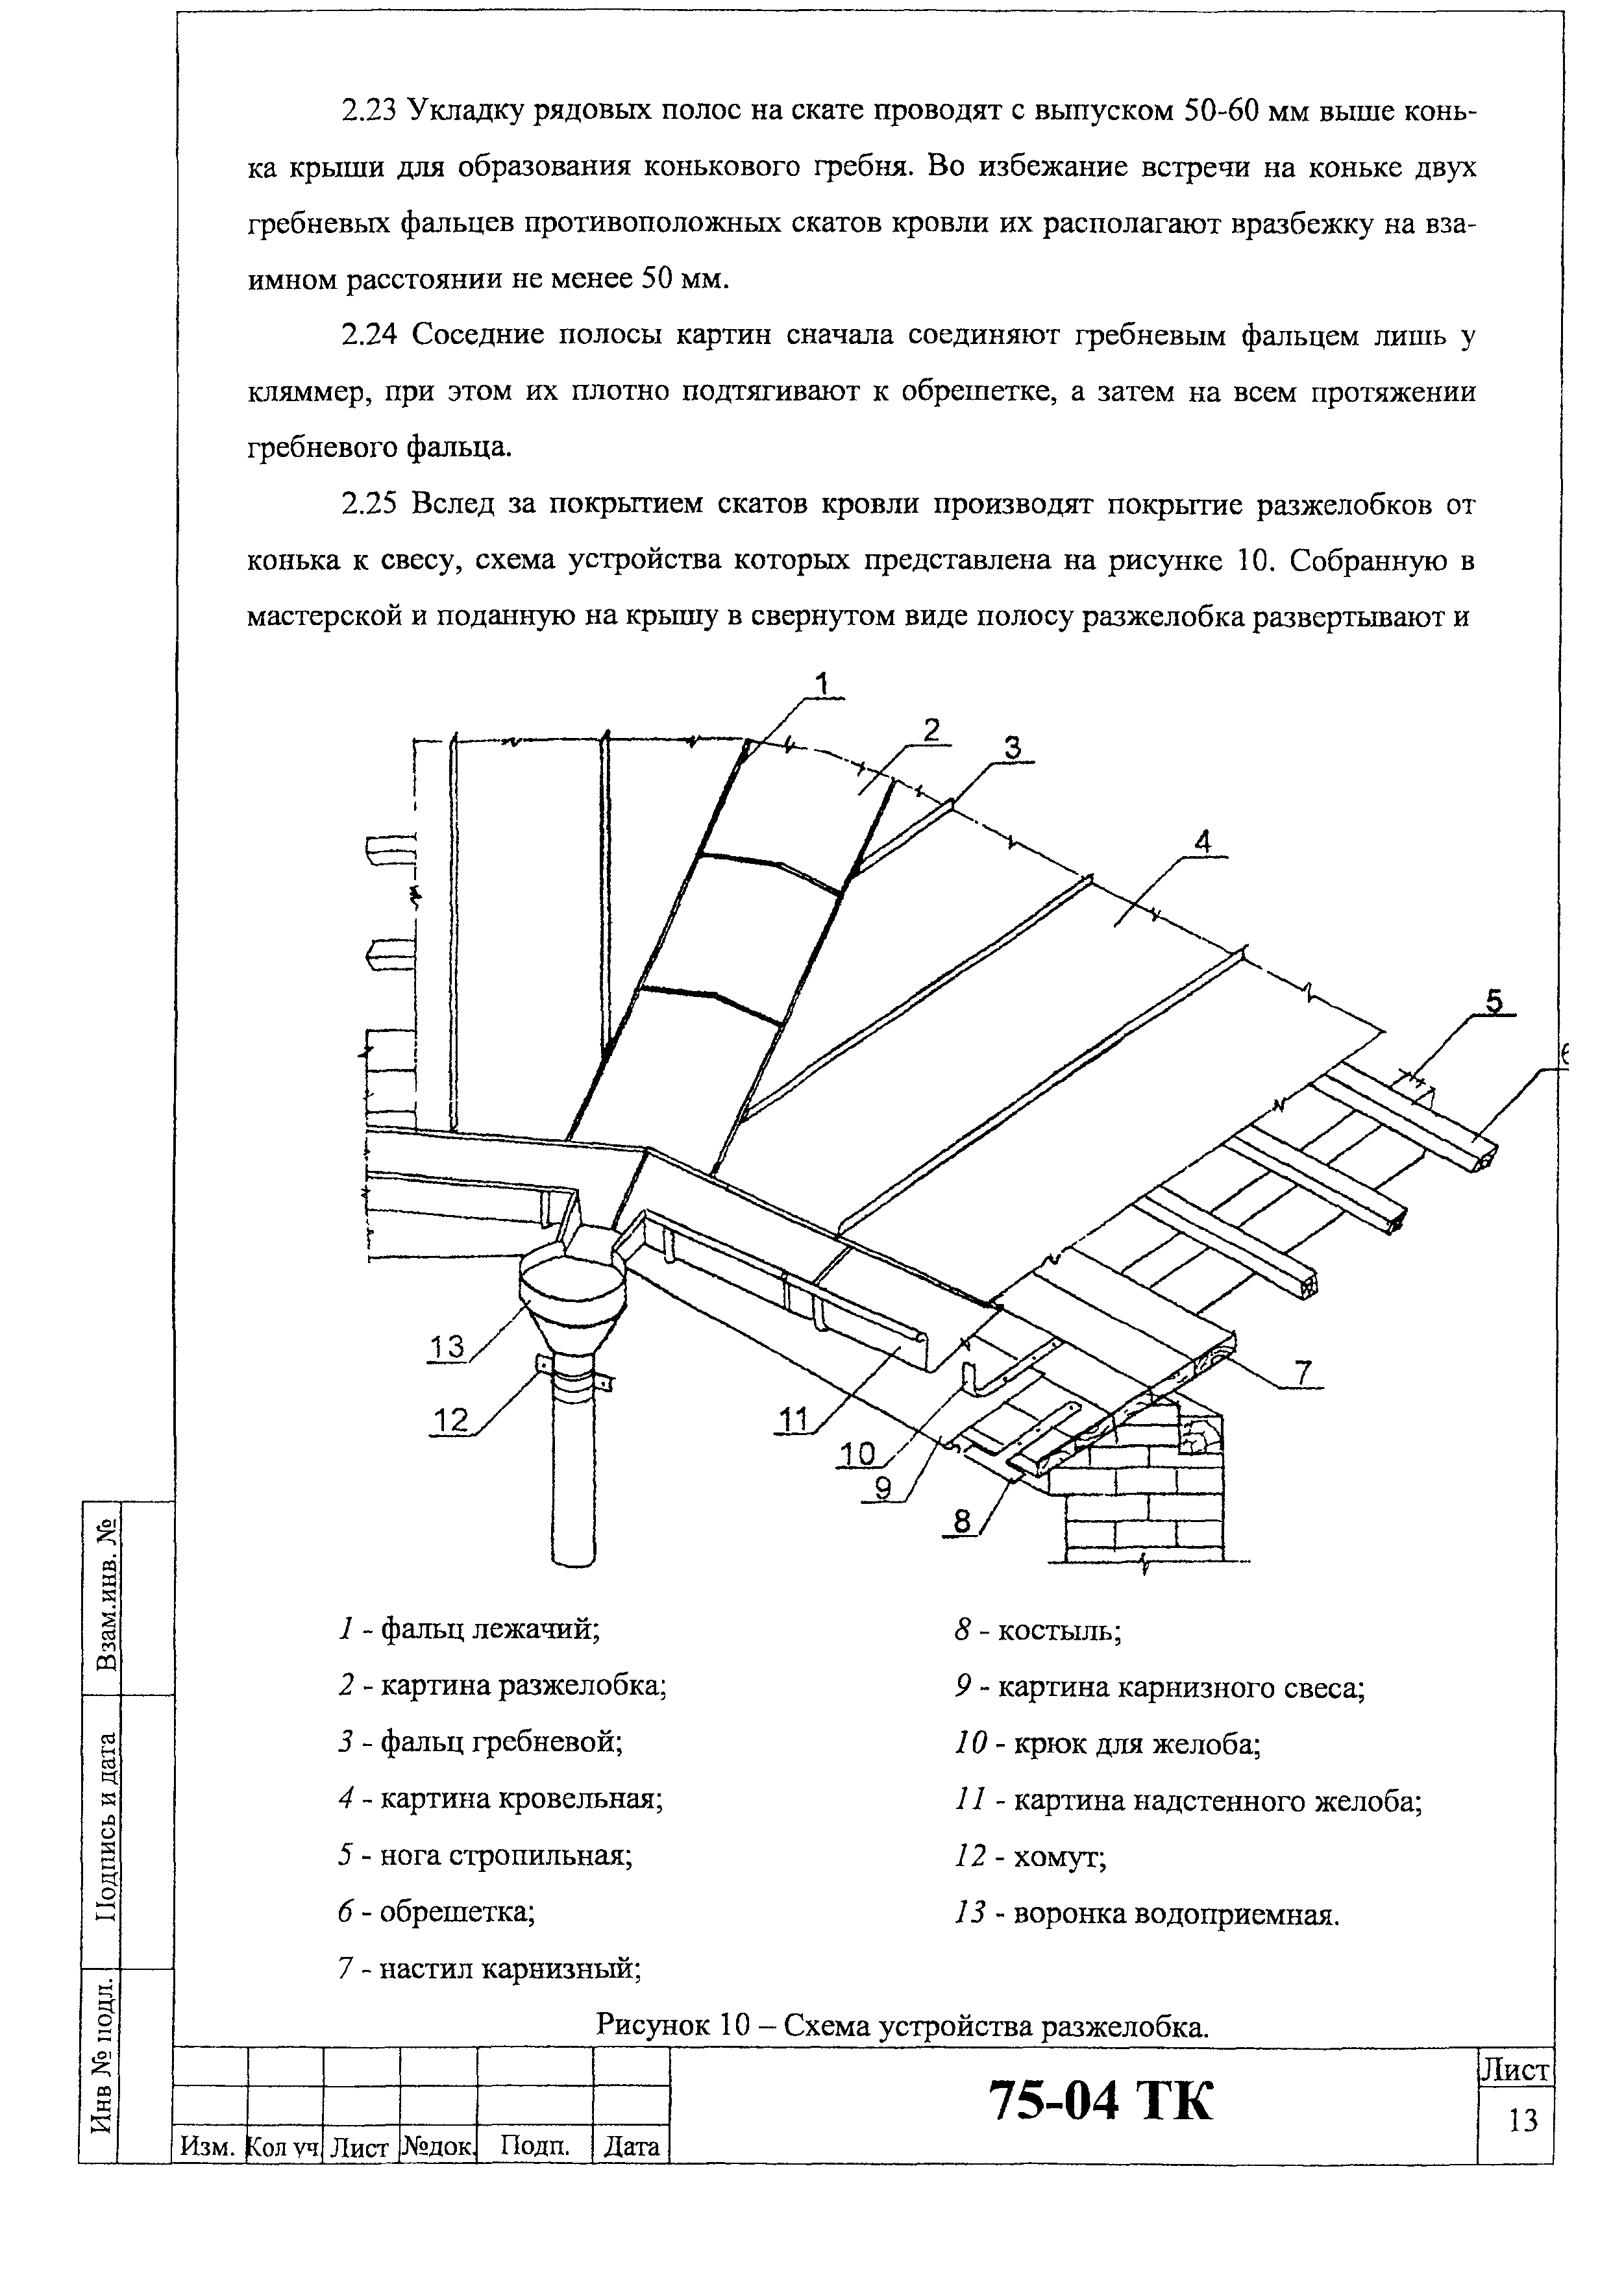 Технологическая карта 75-04 ТК